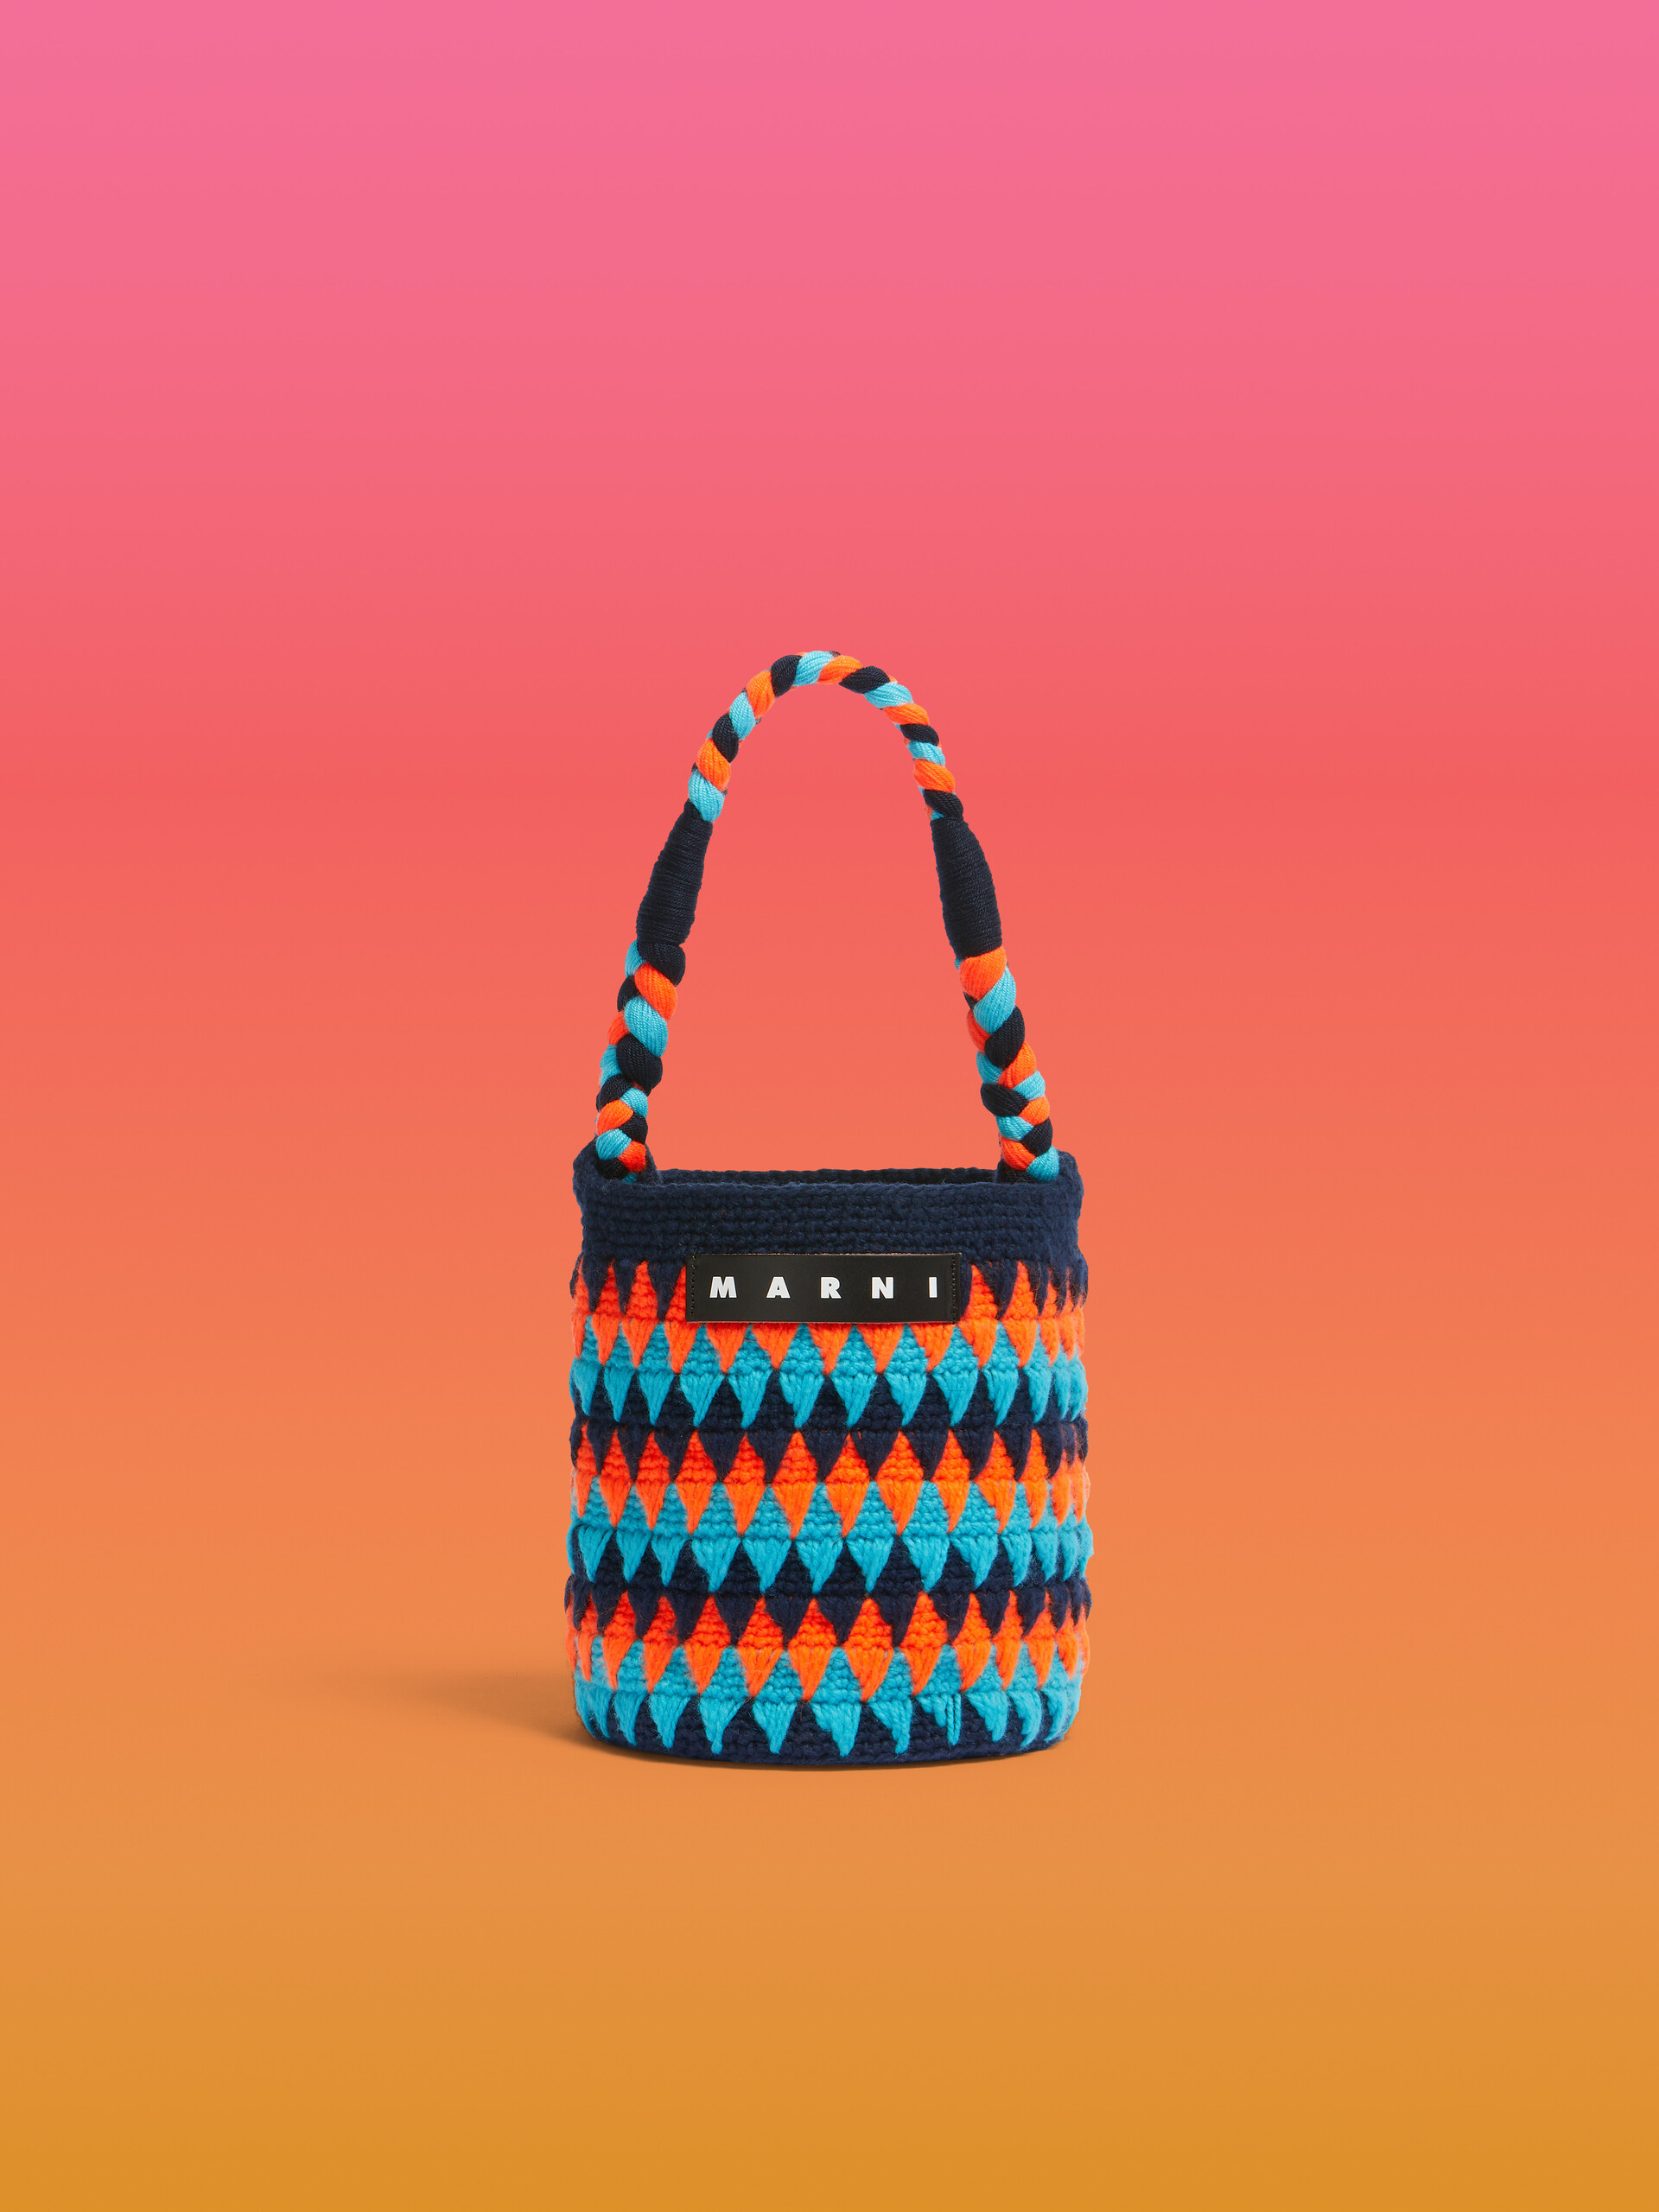 Marni Market Chessboard Häkeltasche in Orange und Blau - Shopper - Image 1